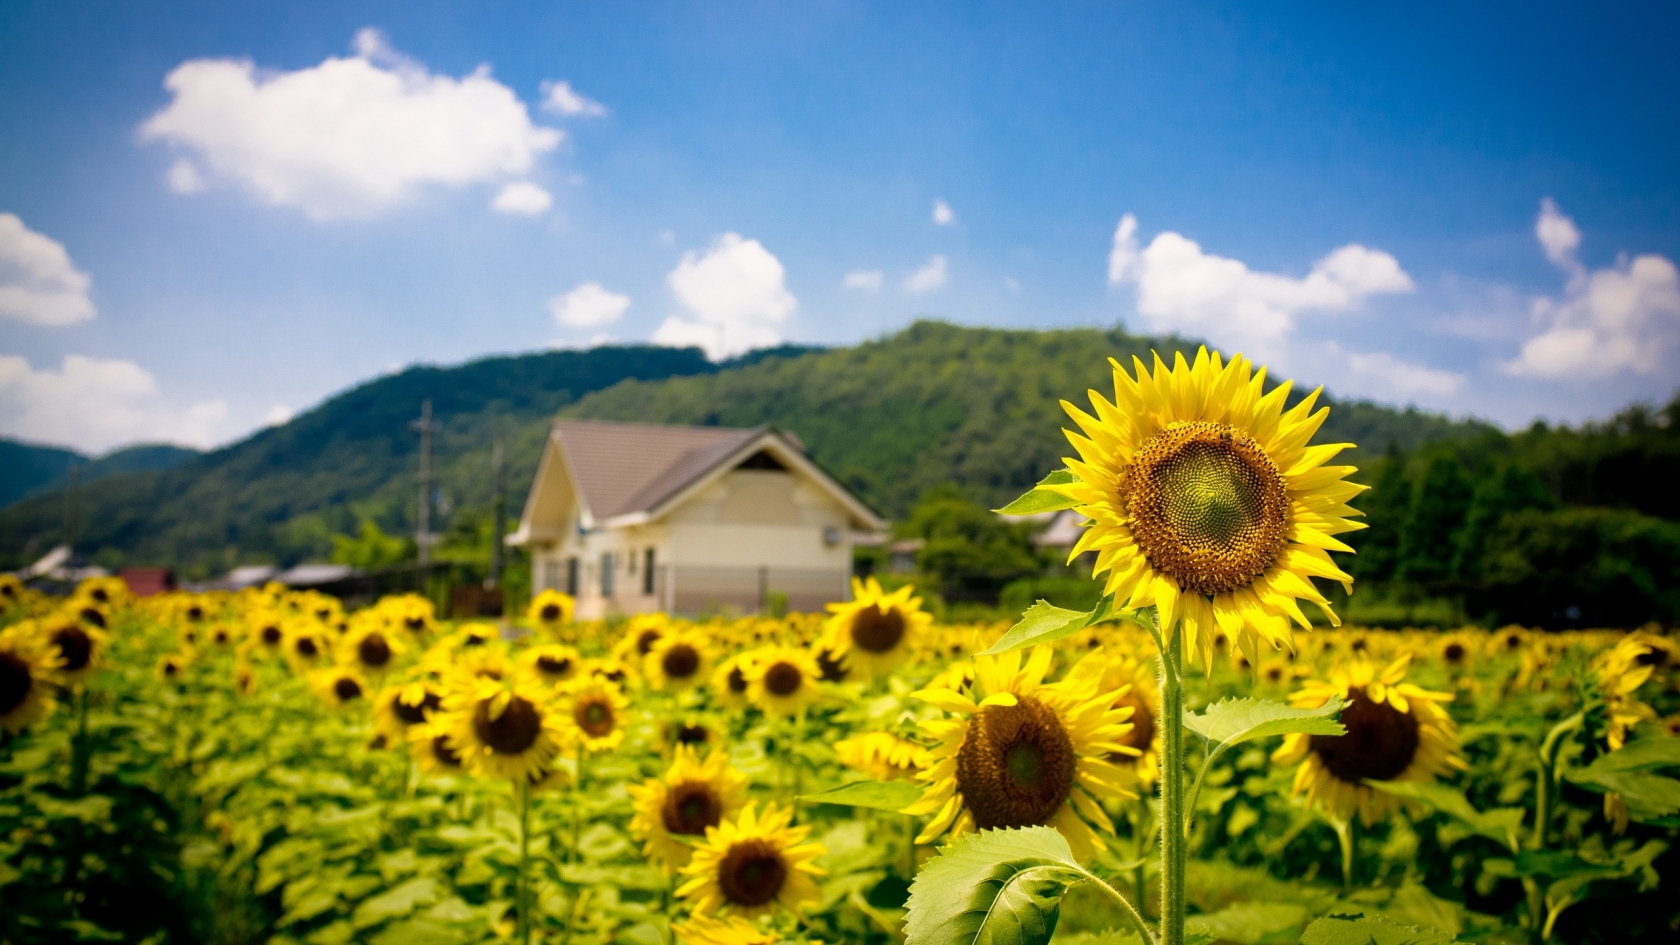 Sunflower Land for 1680 x 945 HDTV resolution